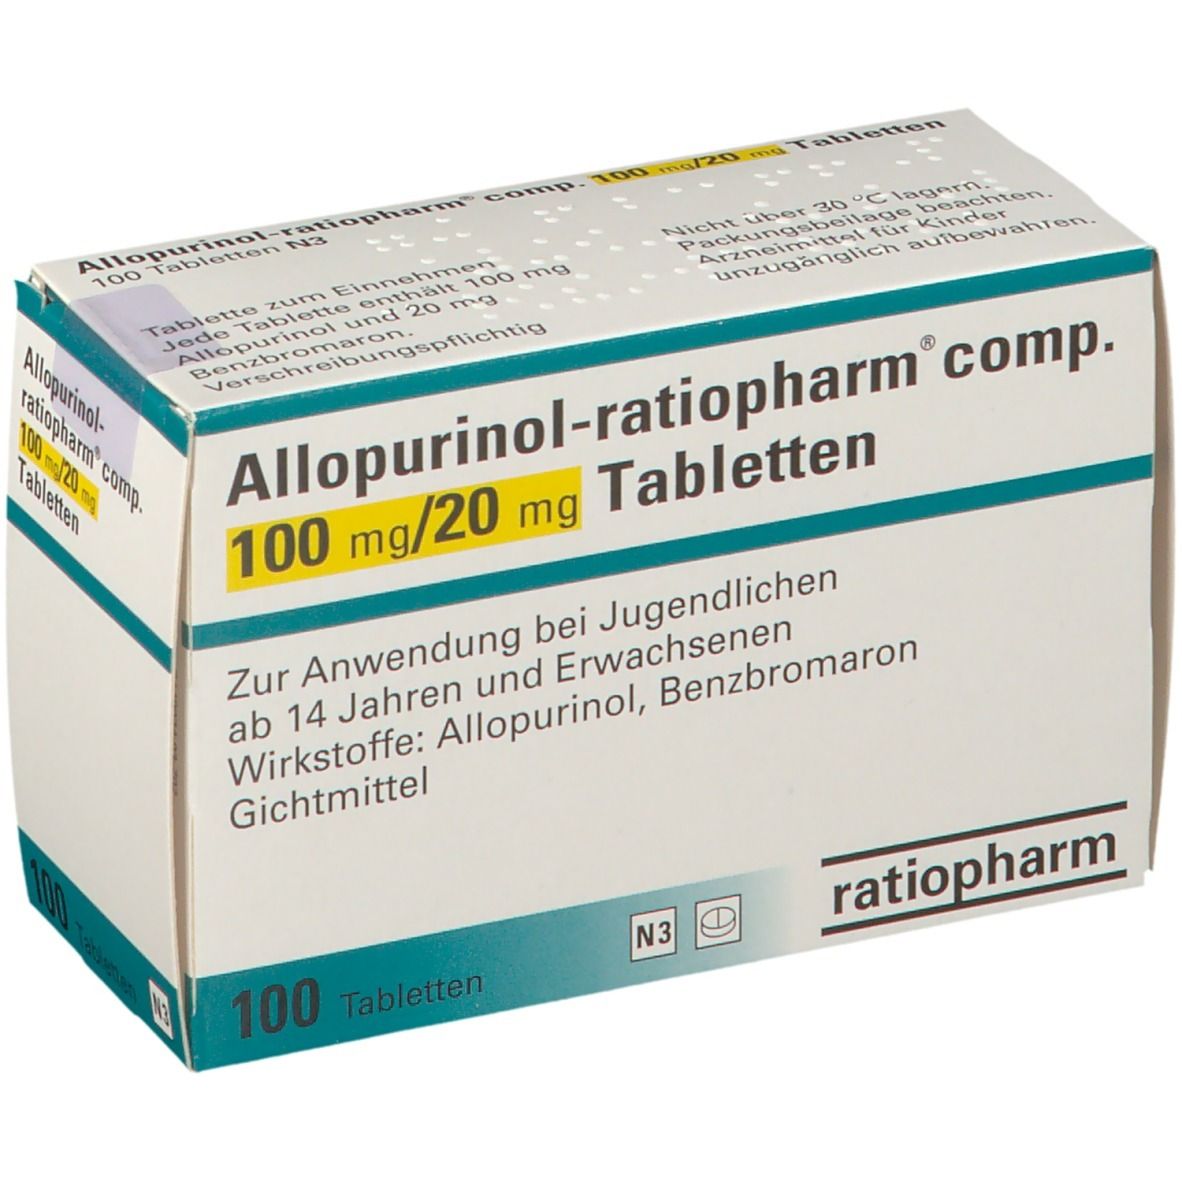 Allopurinol-ratiopharm® comp. 100 mg/20 mg